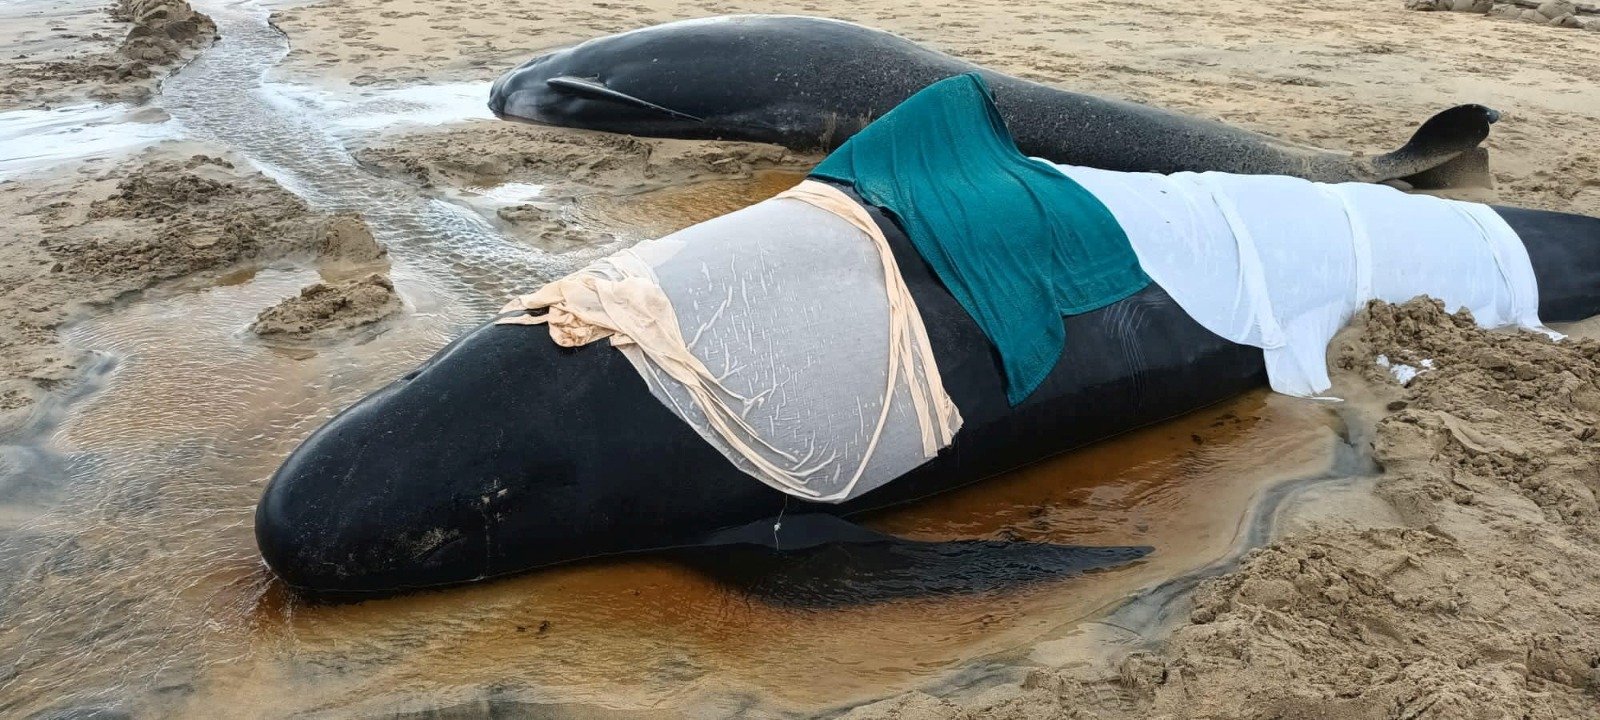 一头领航鲸当地时间周日，在苏格兰刘易斯岛海滩搁浅死亡后，人们将毛巾覆盖在它的遗体上。（图取自Cristina McAvoy/路透社）